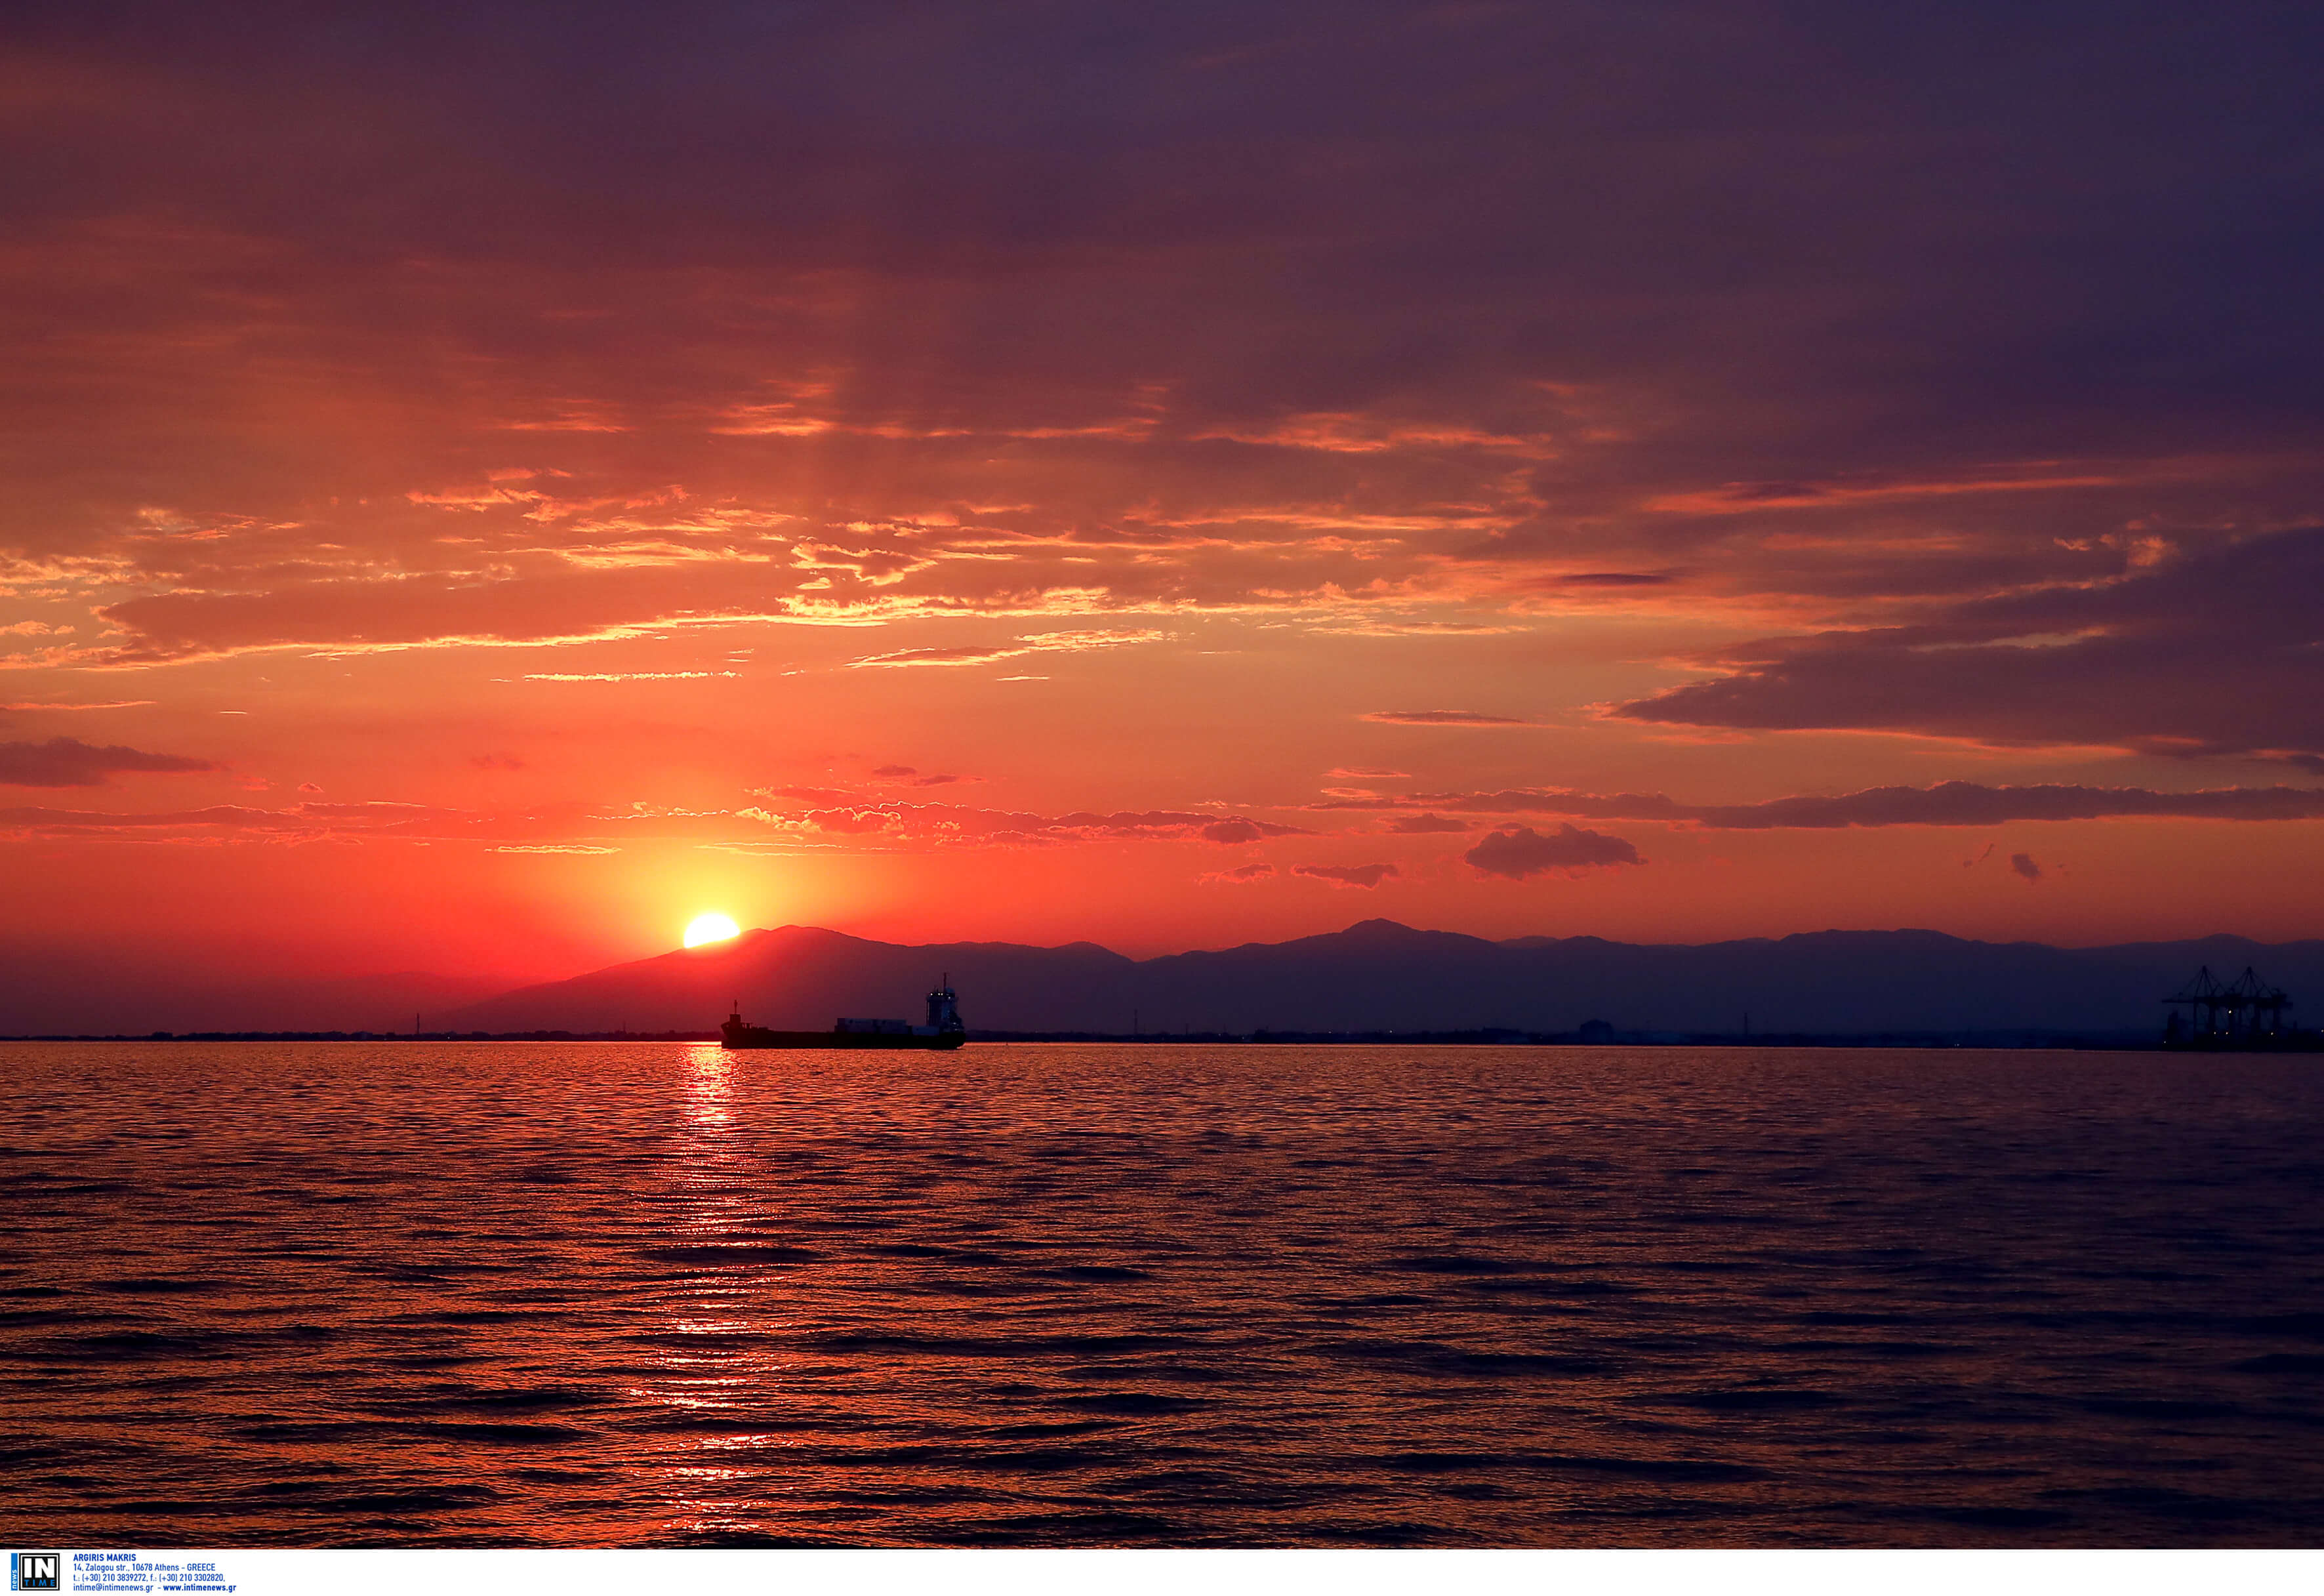 Θεσσαλονίκη: Ερασιτέχνης ψαράς βρέθηκε νεκρός στη θάλασσα του Θερμαϊκού – Μυστήριο για τις συνθήκες θανάτου!